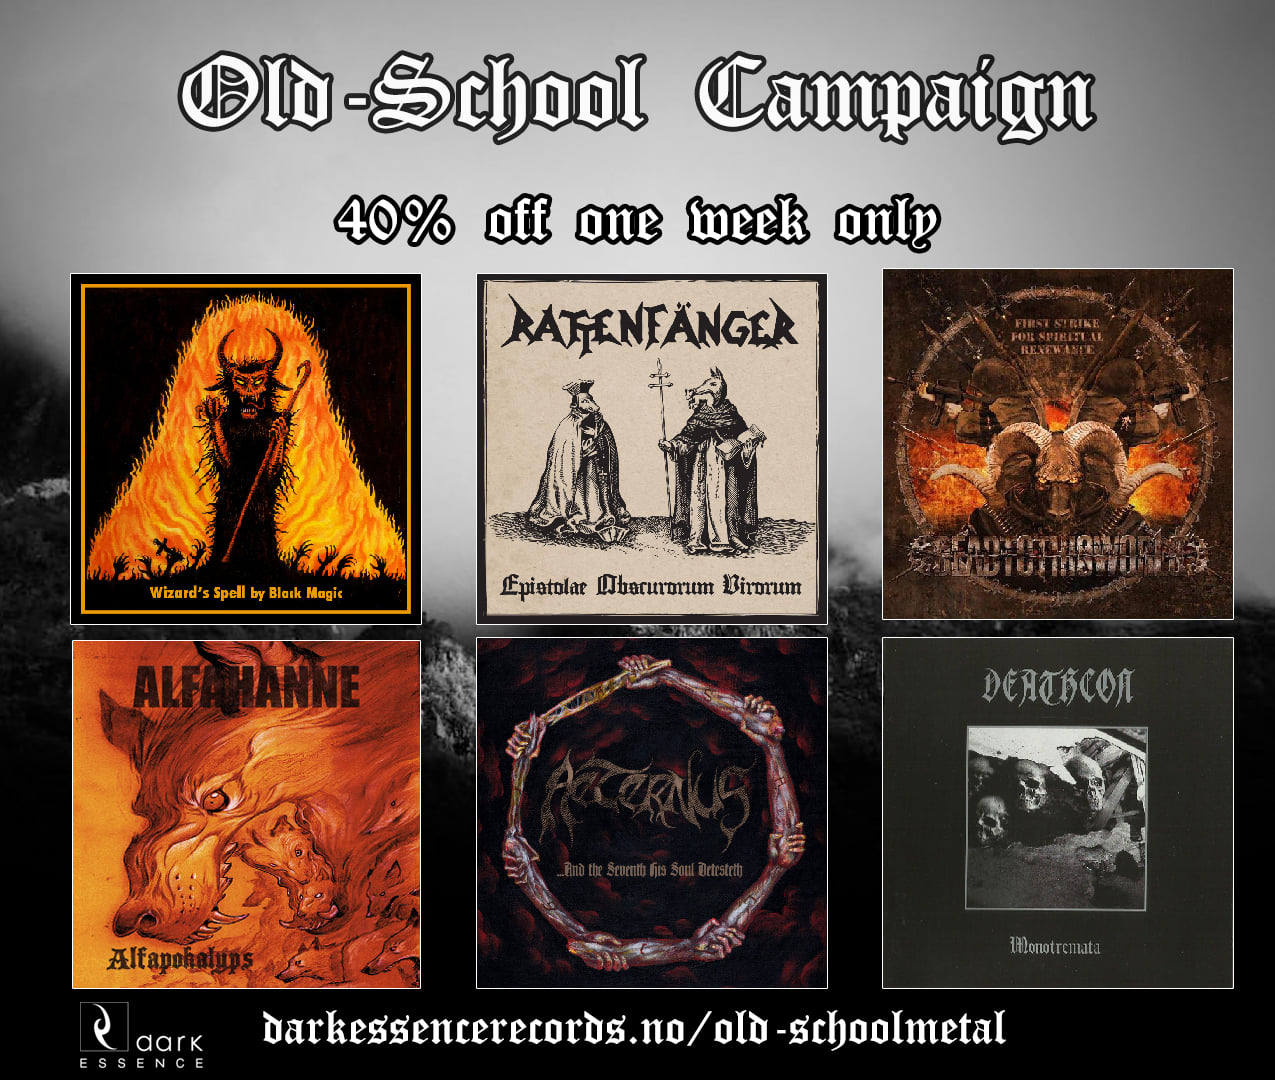 Dark Essence Records_Old School Metal Sales Campaign